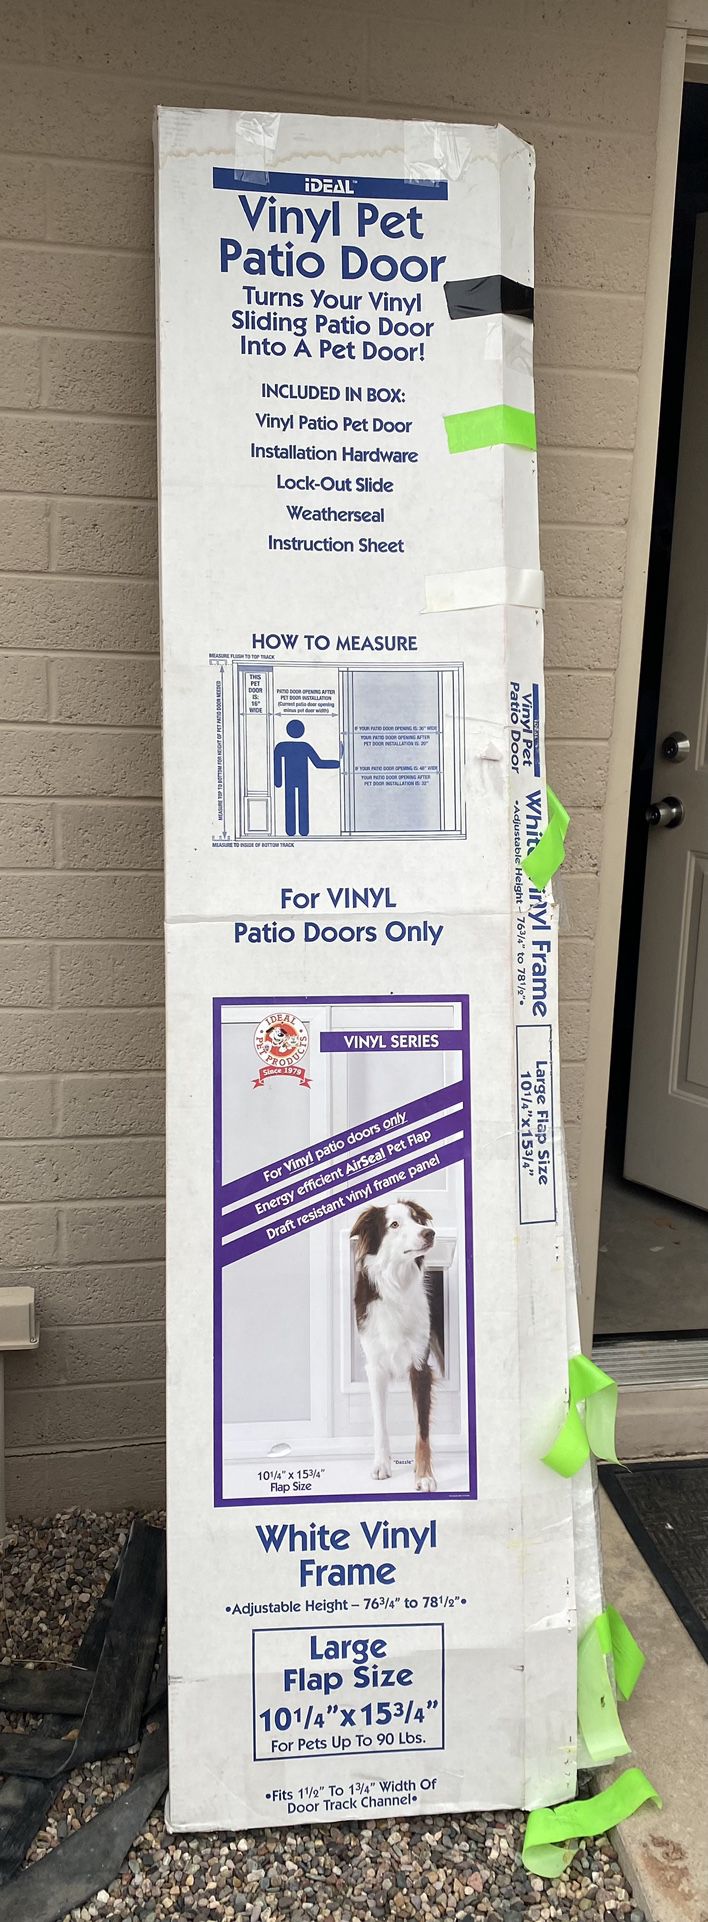 Vinyl Pet Patio Door